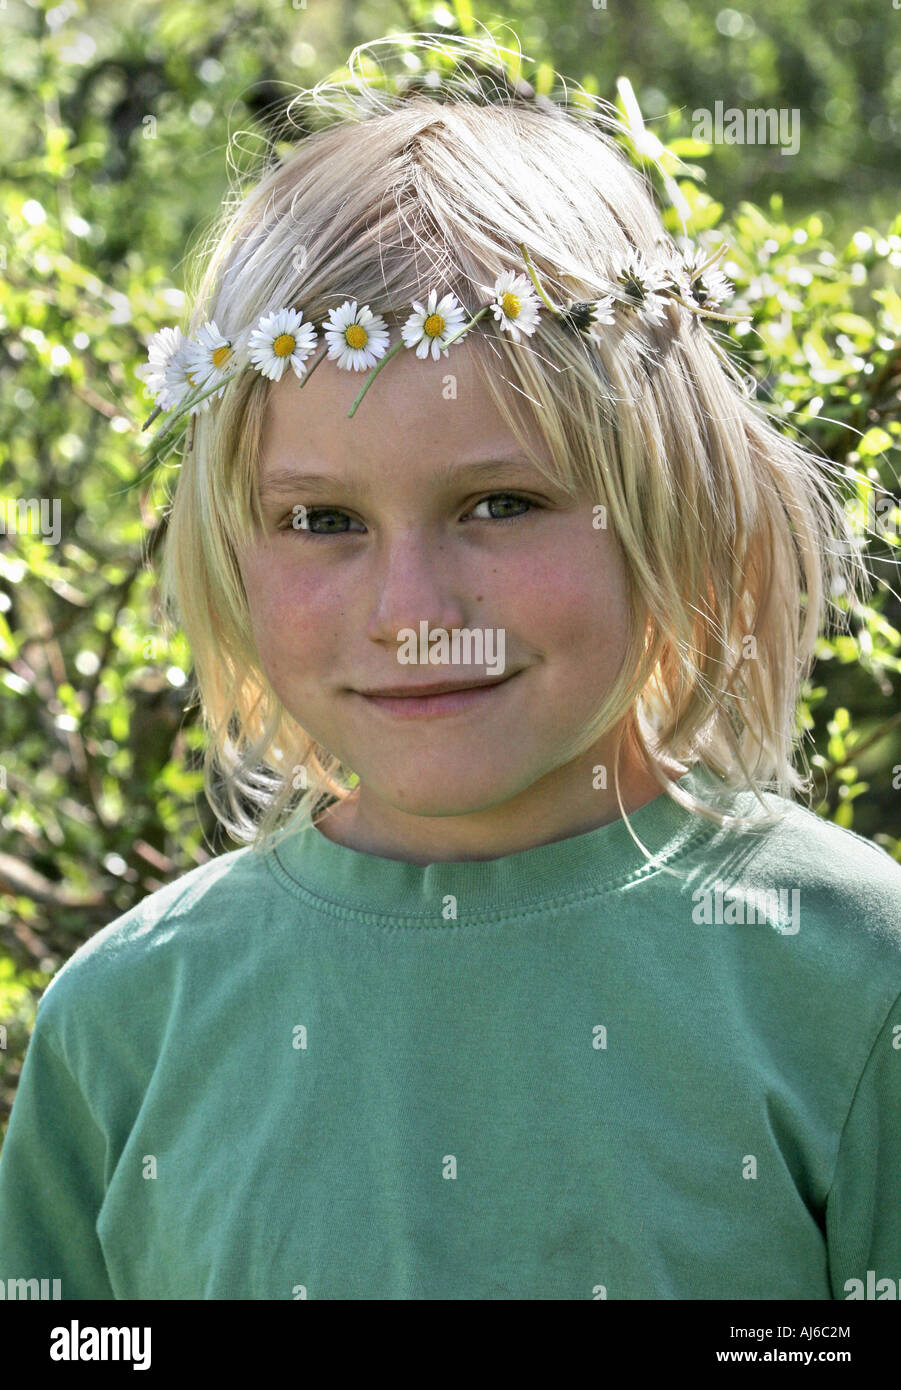 Marguerite commune, pelouse, Daisy Daisy (Anglais) Bellis perennis, jeune garçon avec un bouquet de fleurs la tête ronde Banque D'Images